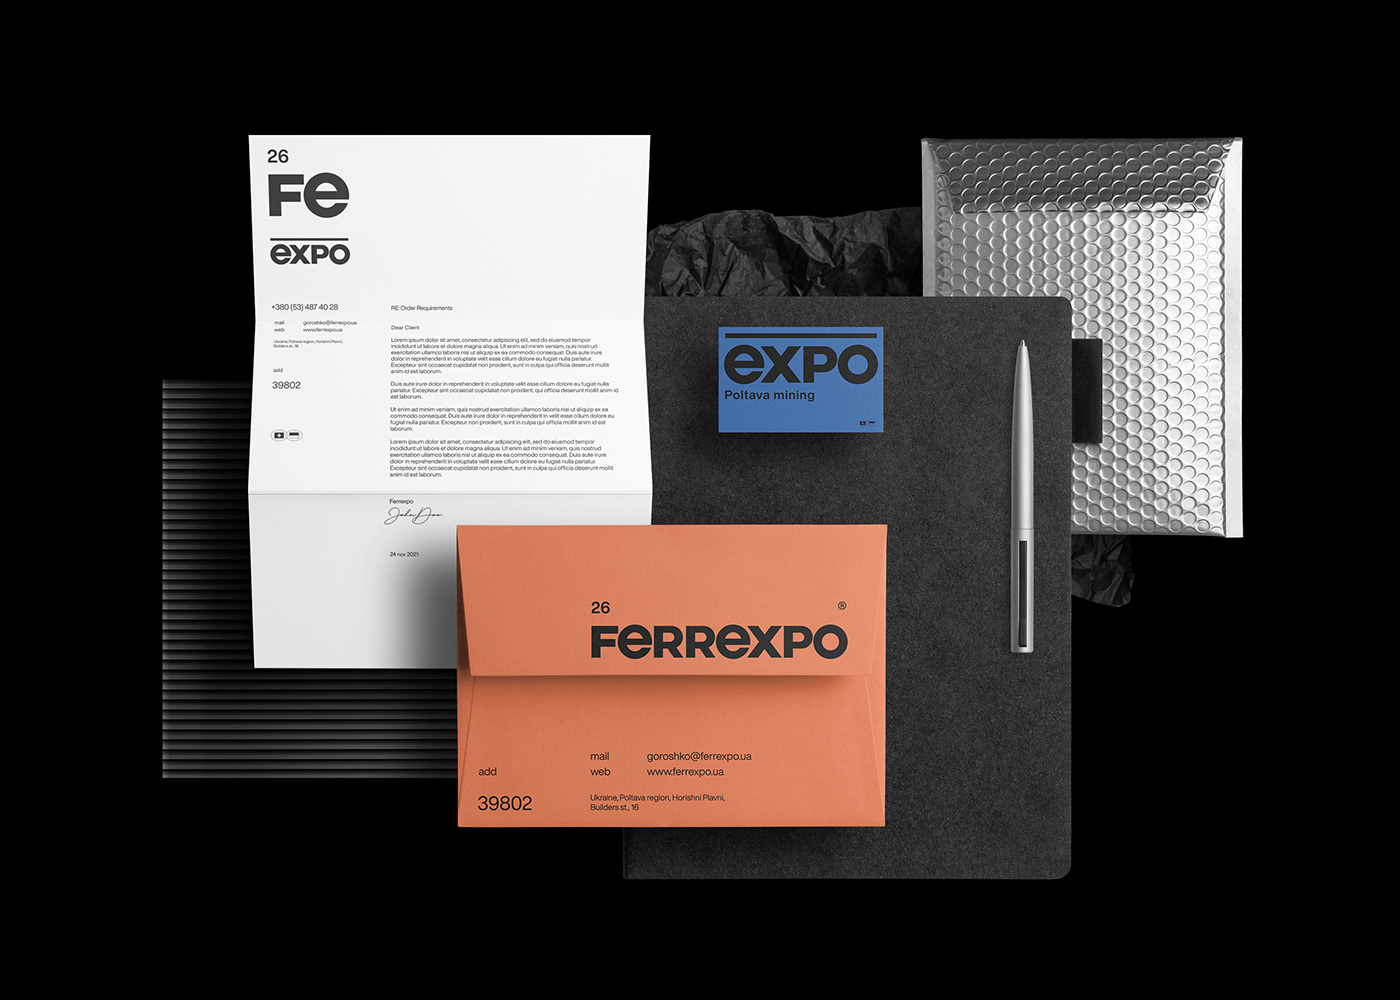 Ferrexpo铁矿厂品牌视觉设计